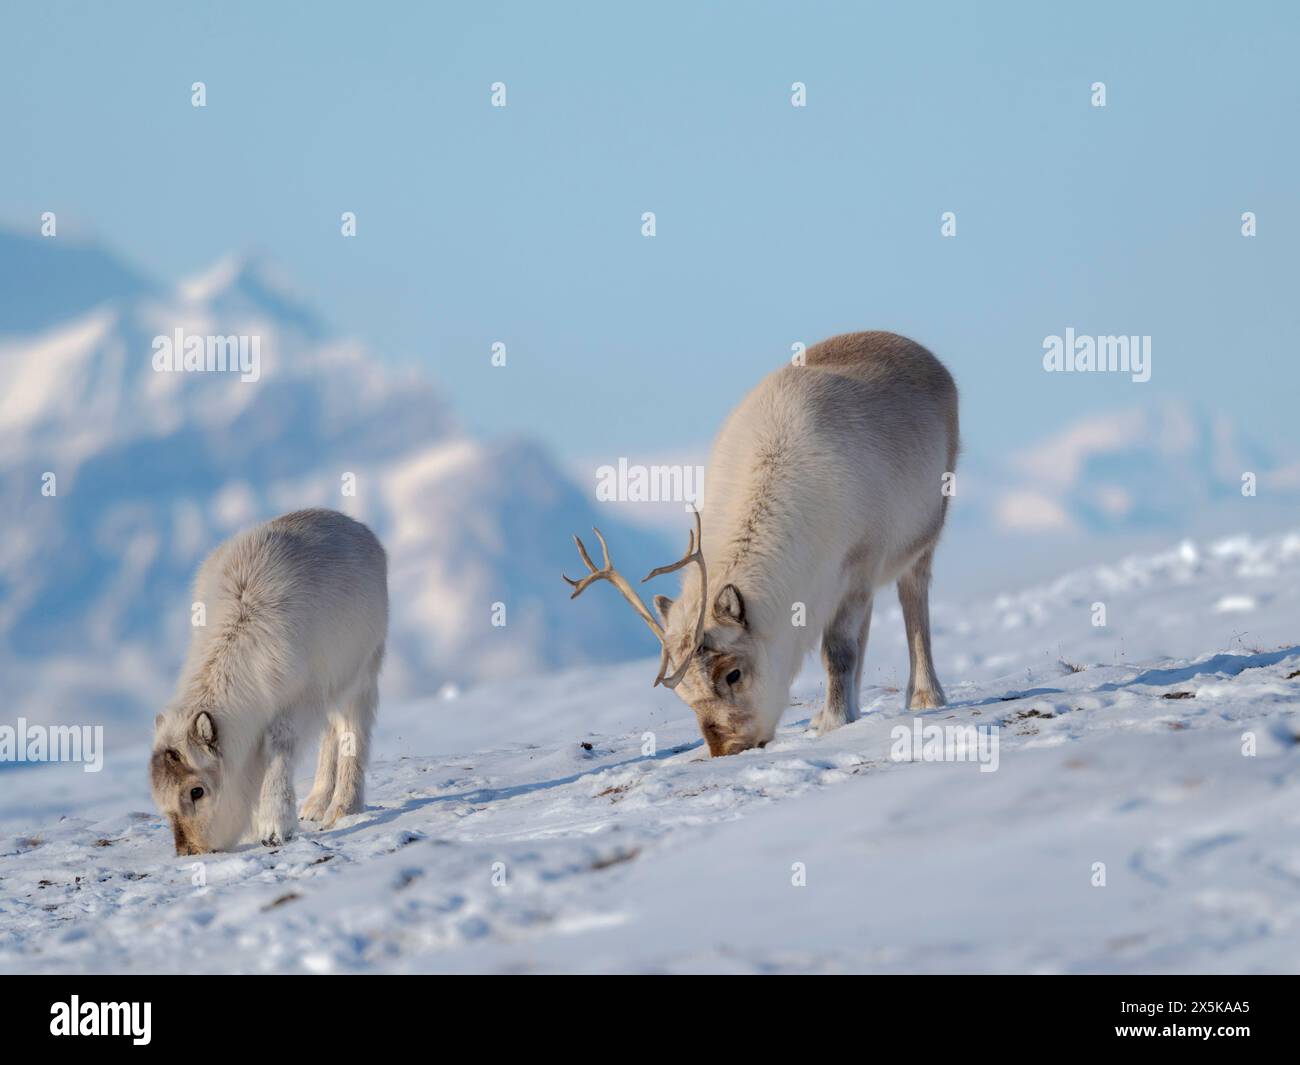 Renna delle Svalbard a Gronfjorden, una sottospecie endemica di renna, che vive solo nelle Svalbard e non è mai stata addomesticata. Regioni polari, inverno artico. Foto Stock